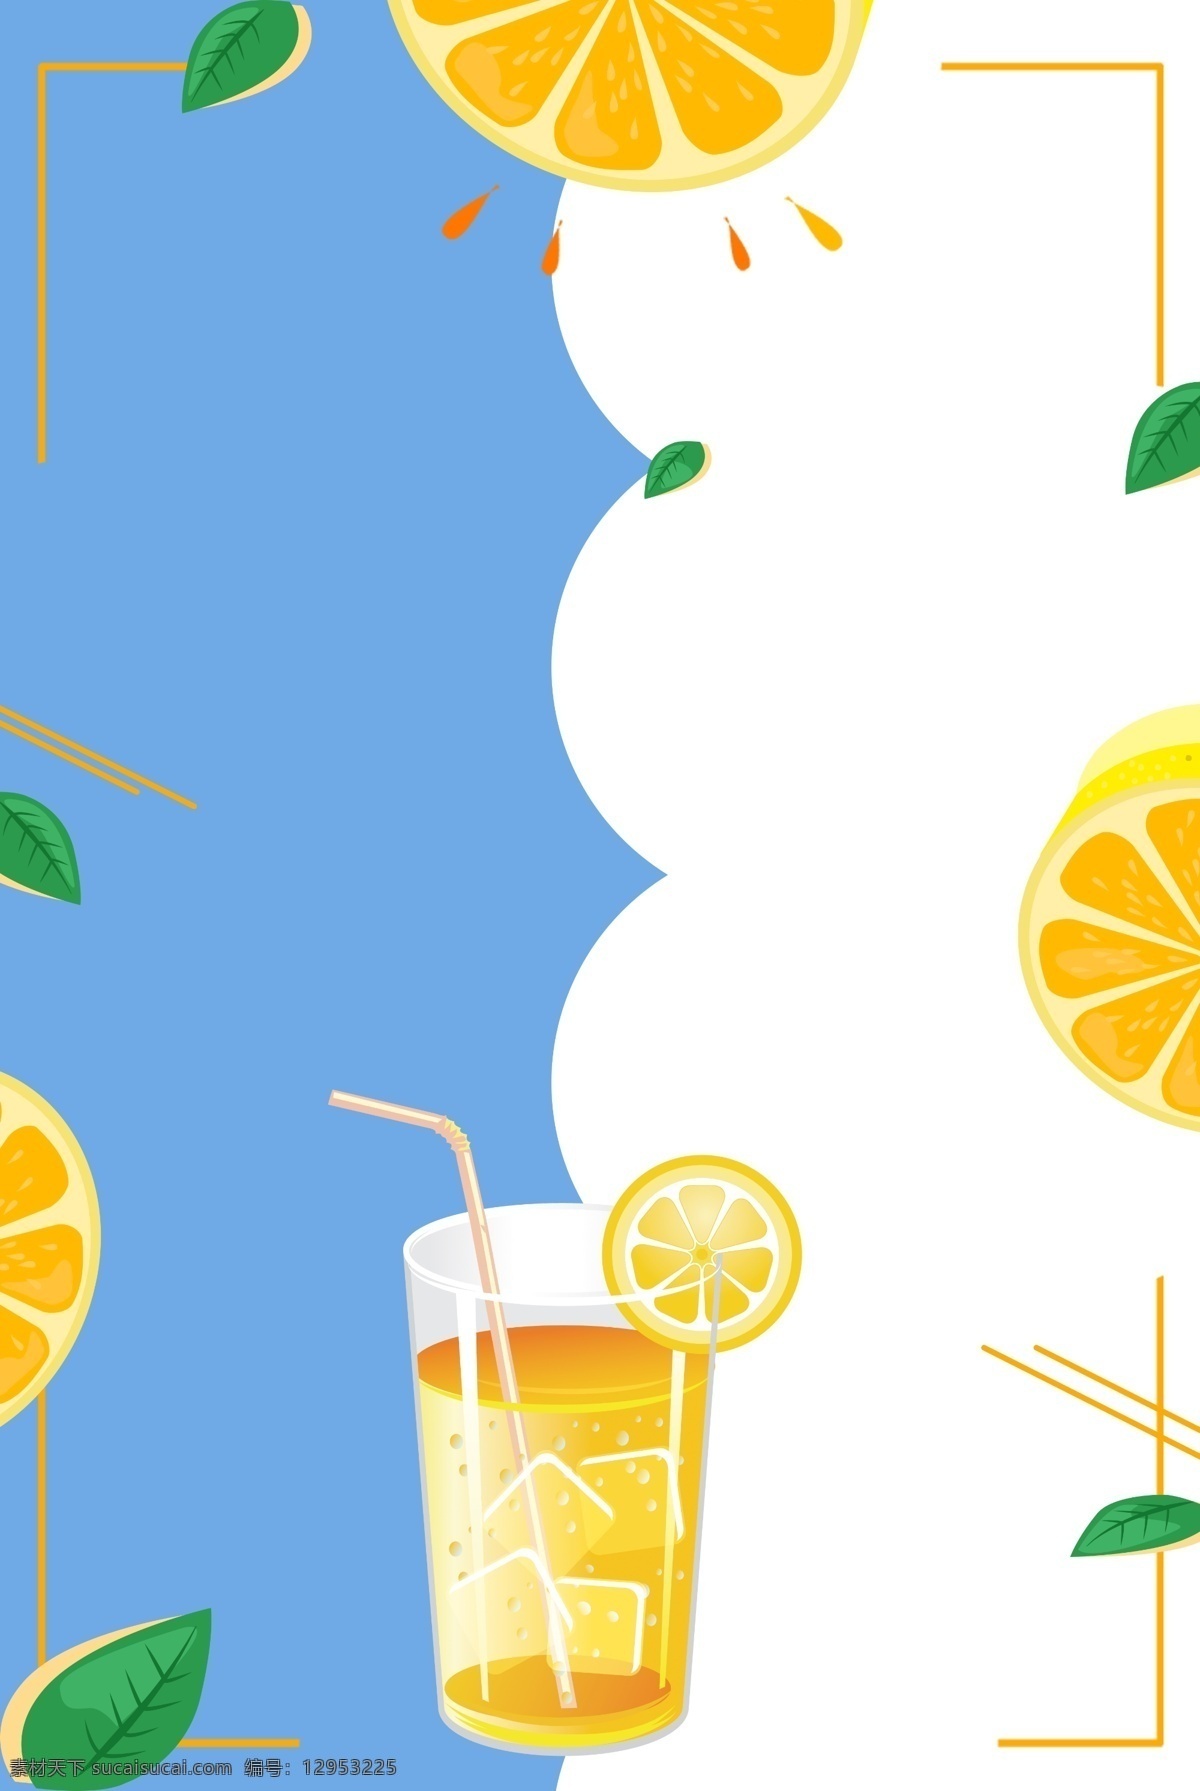 清凉 一夏 夏季 橙汁 饮料 促销 海报 背景 夏日 清凉一夏 夏季冷饮 饮品 小清新 夏日出行 你好夏天 小暑